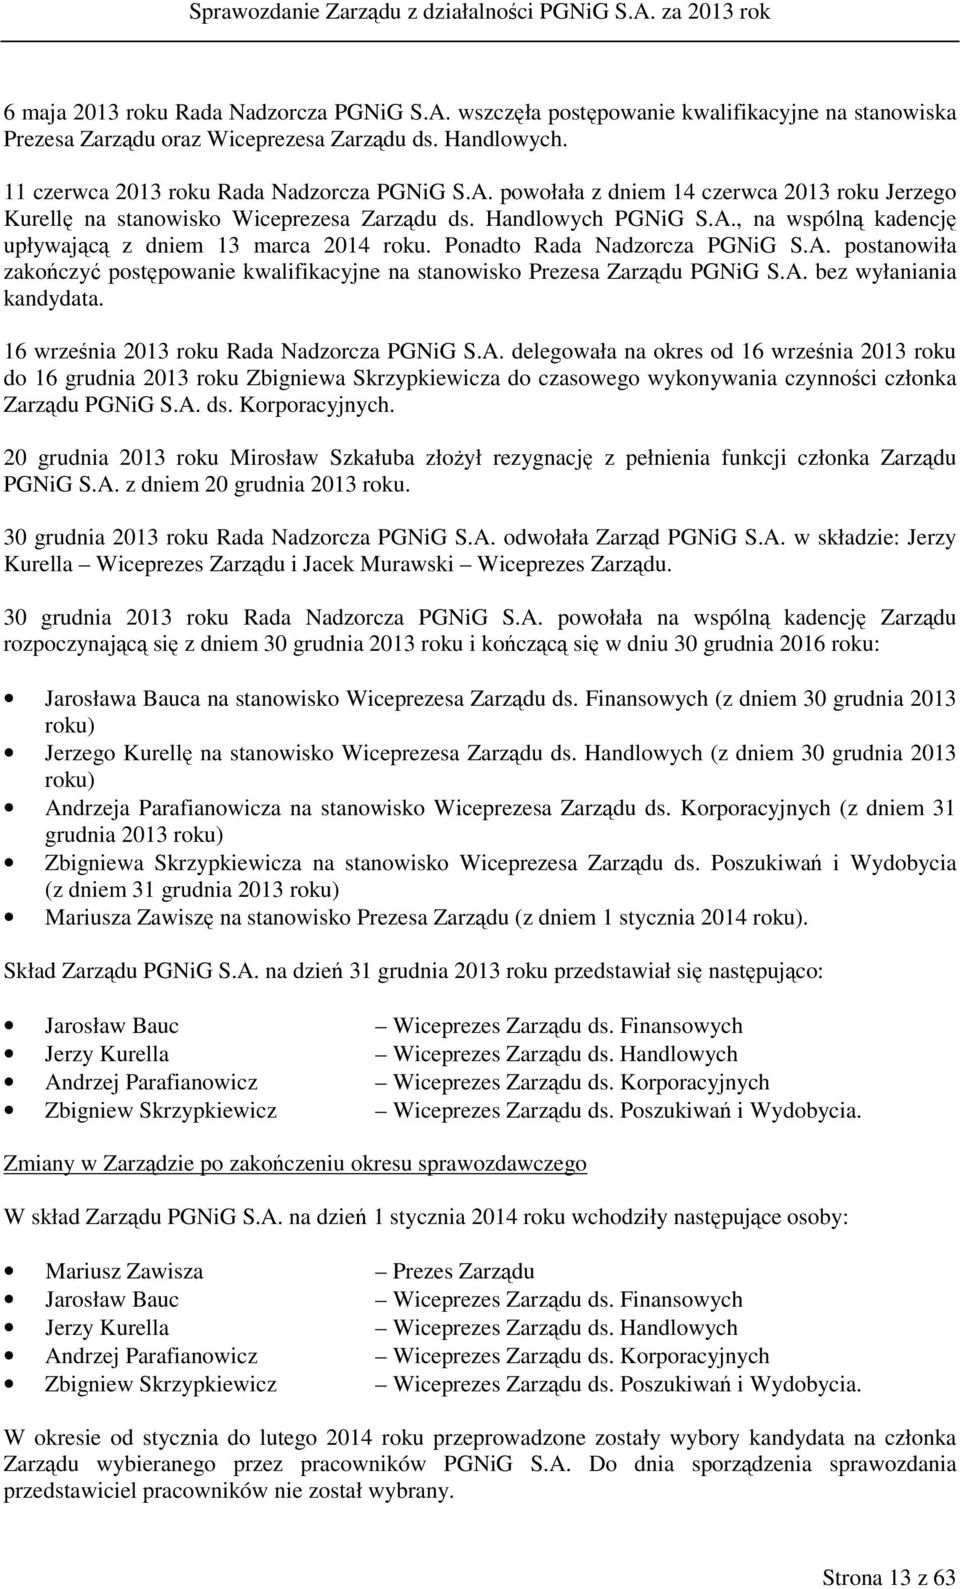 A. bez wyłaniania kandydata. 16 września 2013 roku Rada Nadzorcza PGNiG S.A. delegowała na okres od 16 września 2013 roku do 16 grudnia 2013 roku Zbigniewa Skrzypkiewicza do czasowego wykonywania czynności członka Zarządu PGNiG S.